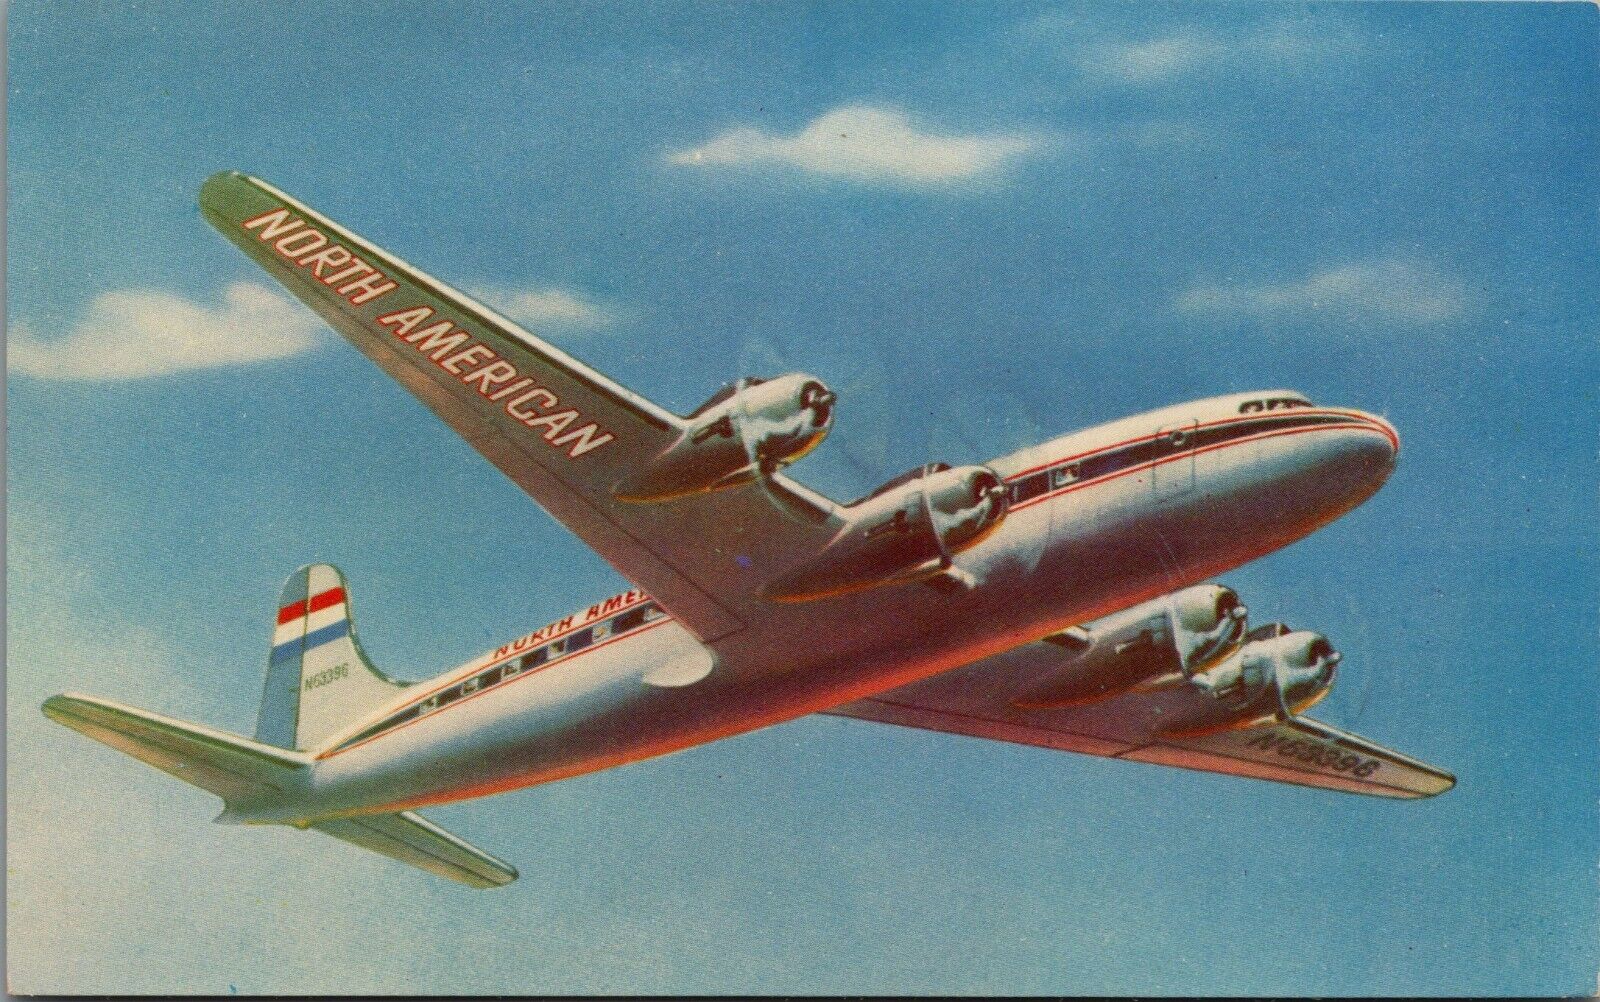 Vintage 4-Engine Skymaster Prop Airplane North American Airlines Postcard C251